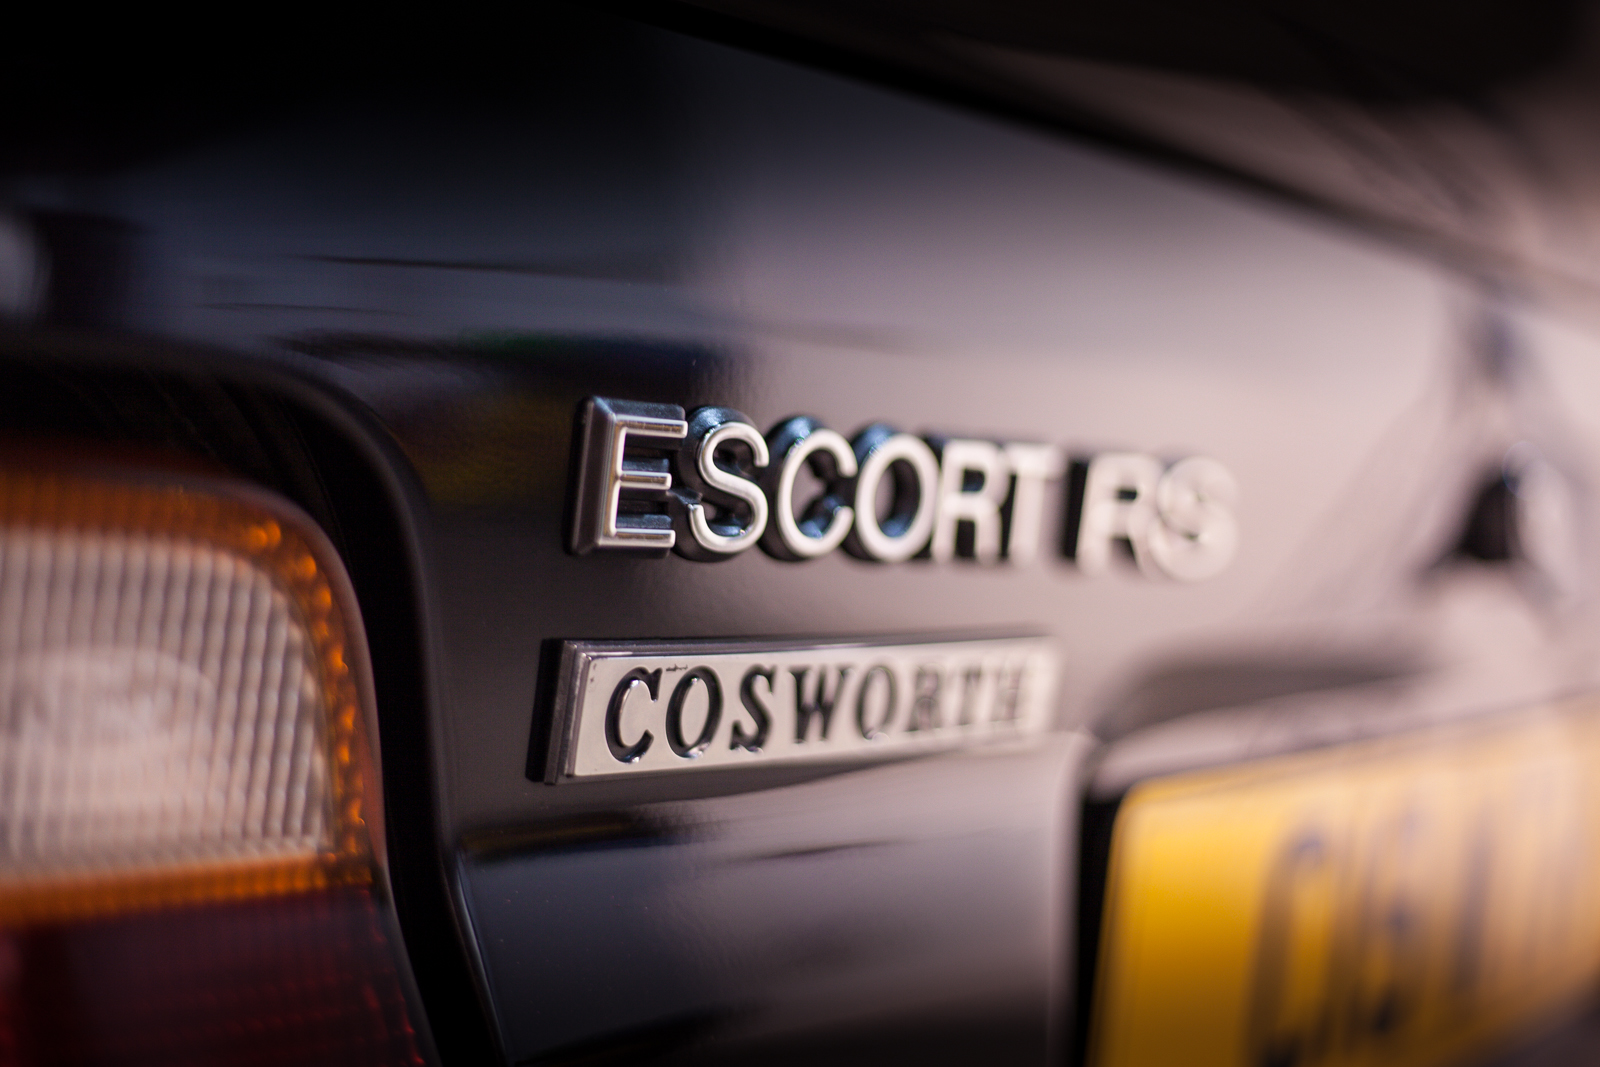 Ford Escort RS Cosworth, RS Cosworth, Escort Cosworth, Cosworth, Escort RS, Ford, Sierra Cosworth, classic car, retro car, motoring, automotive, WRC, carandclassic, carandclassic.co.uk